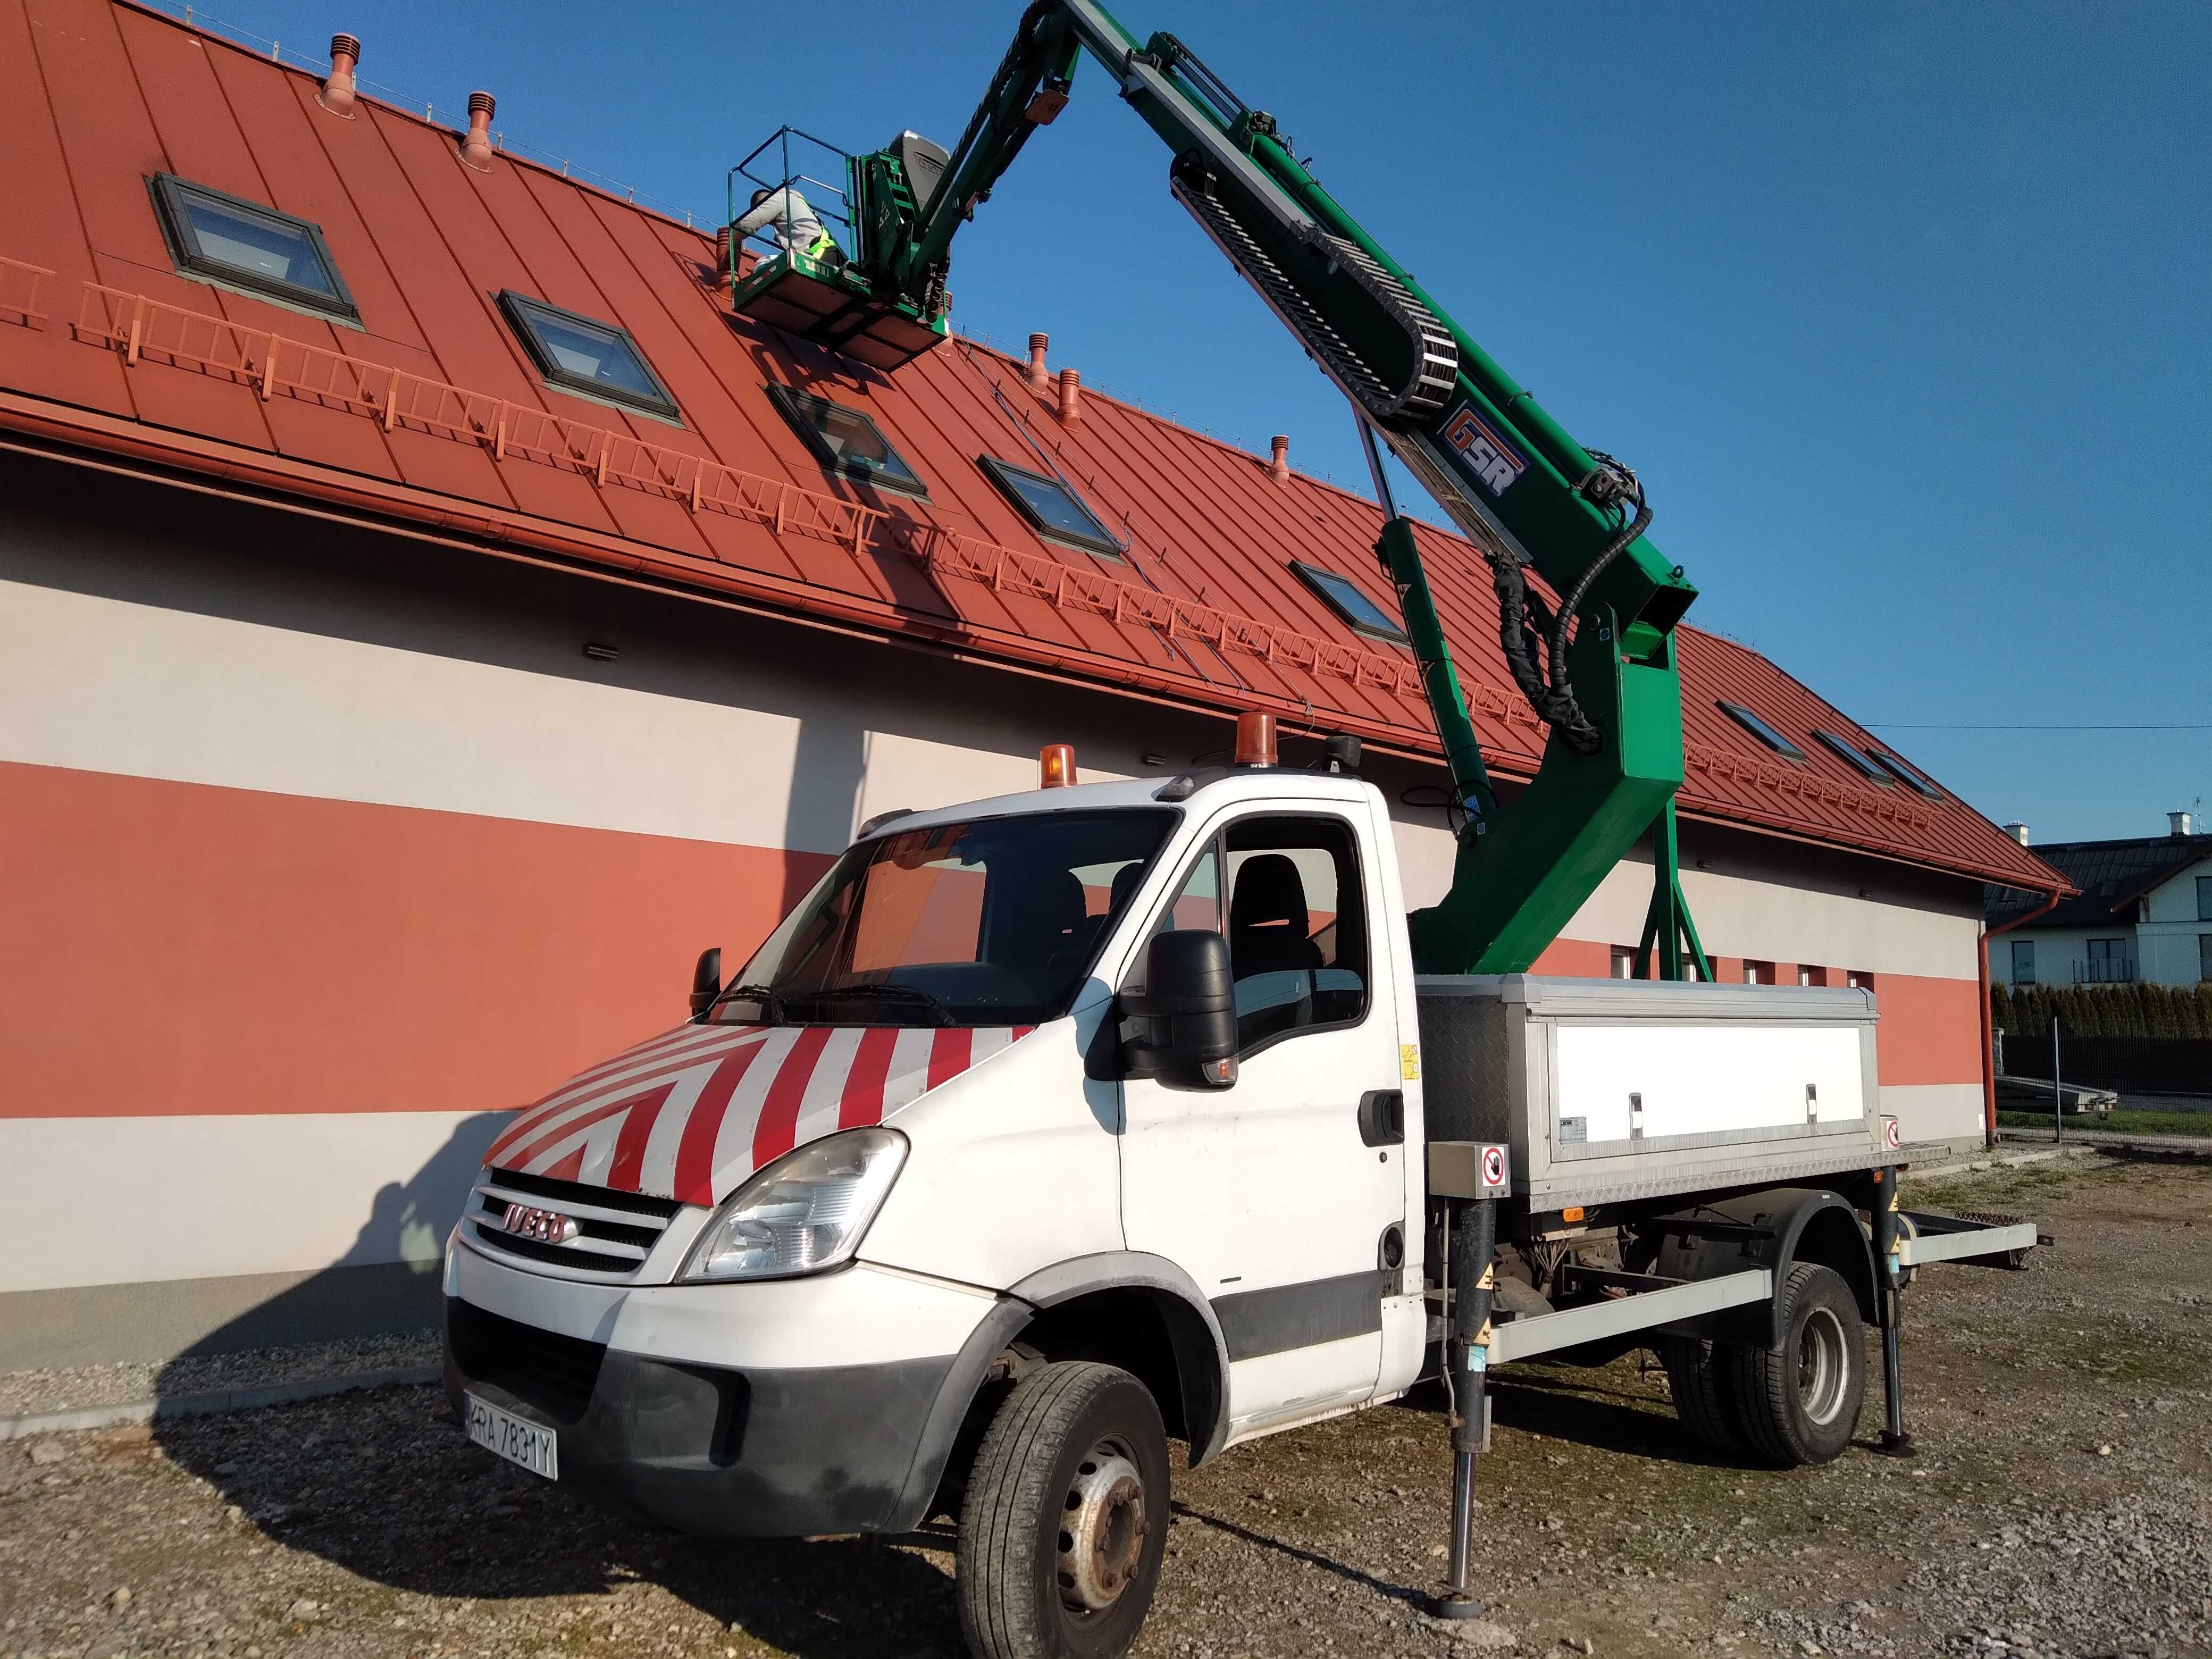 Malowanie Naprawy Mycie Dachów - Usługi dekarskie Czyszczenie rynien